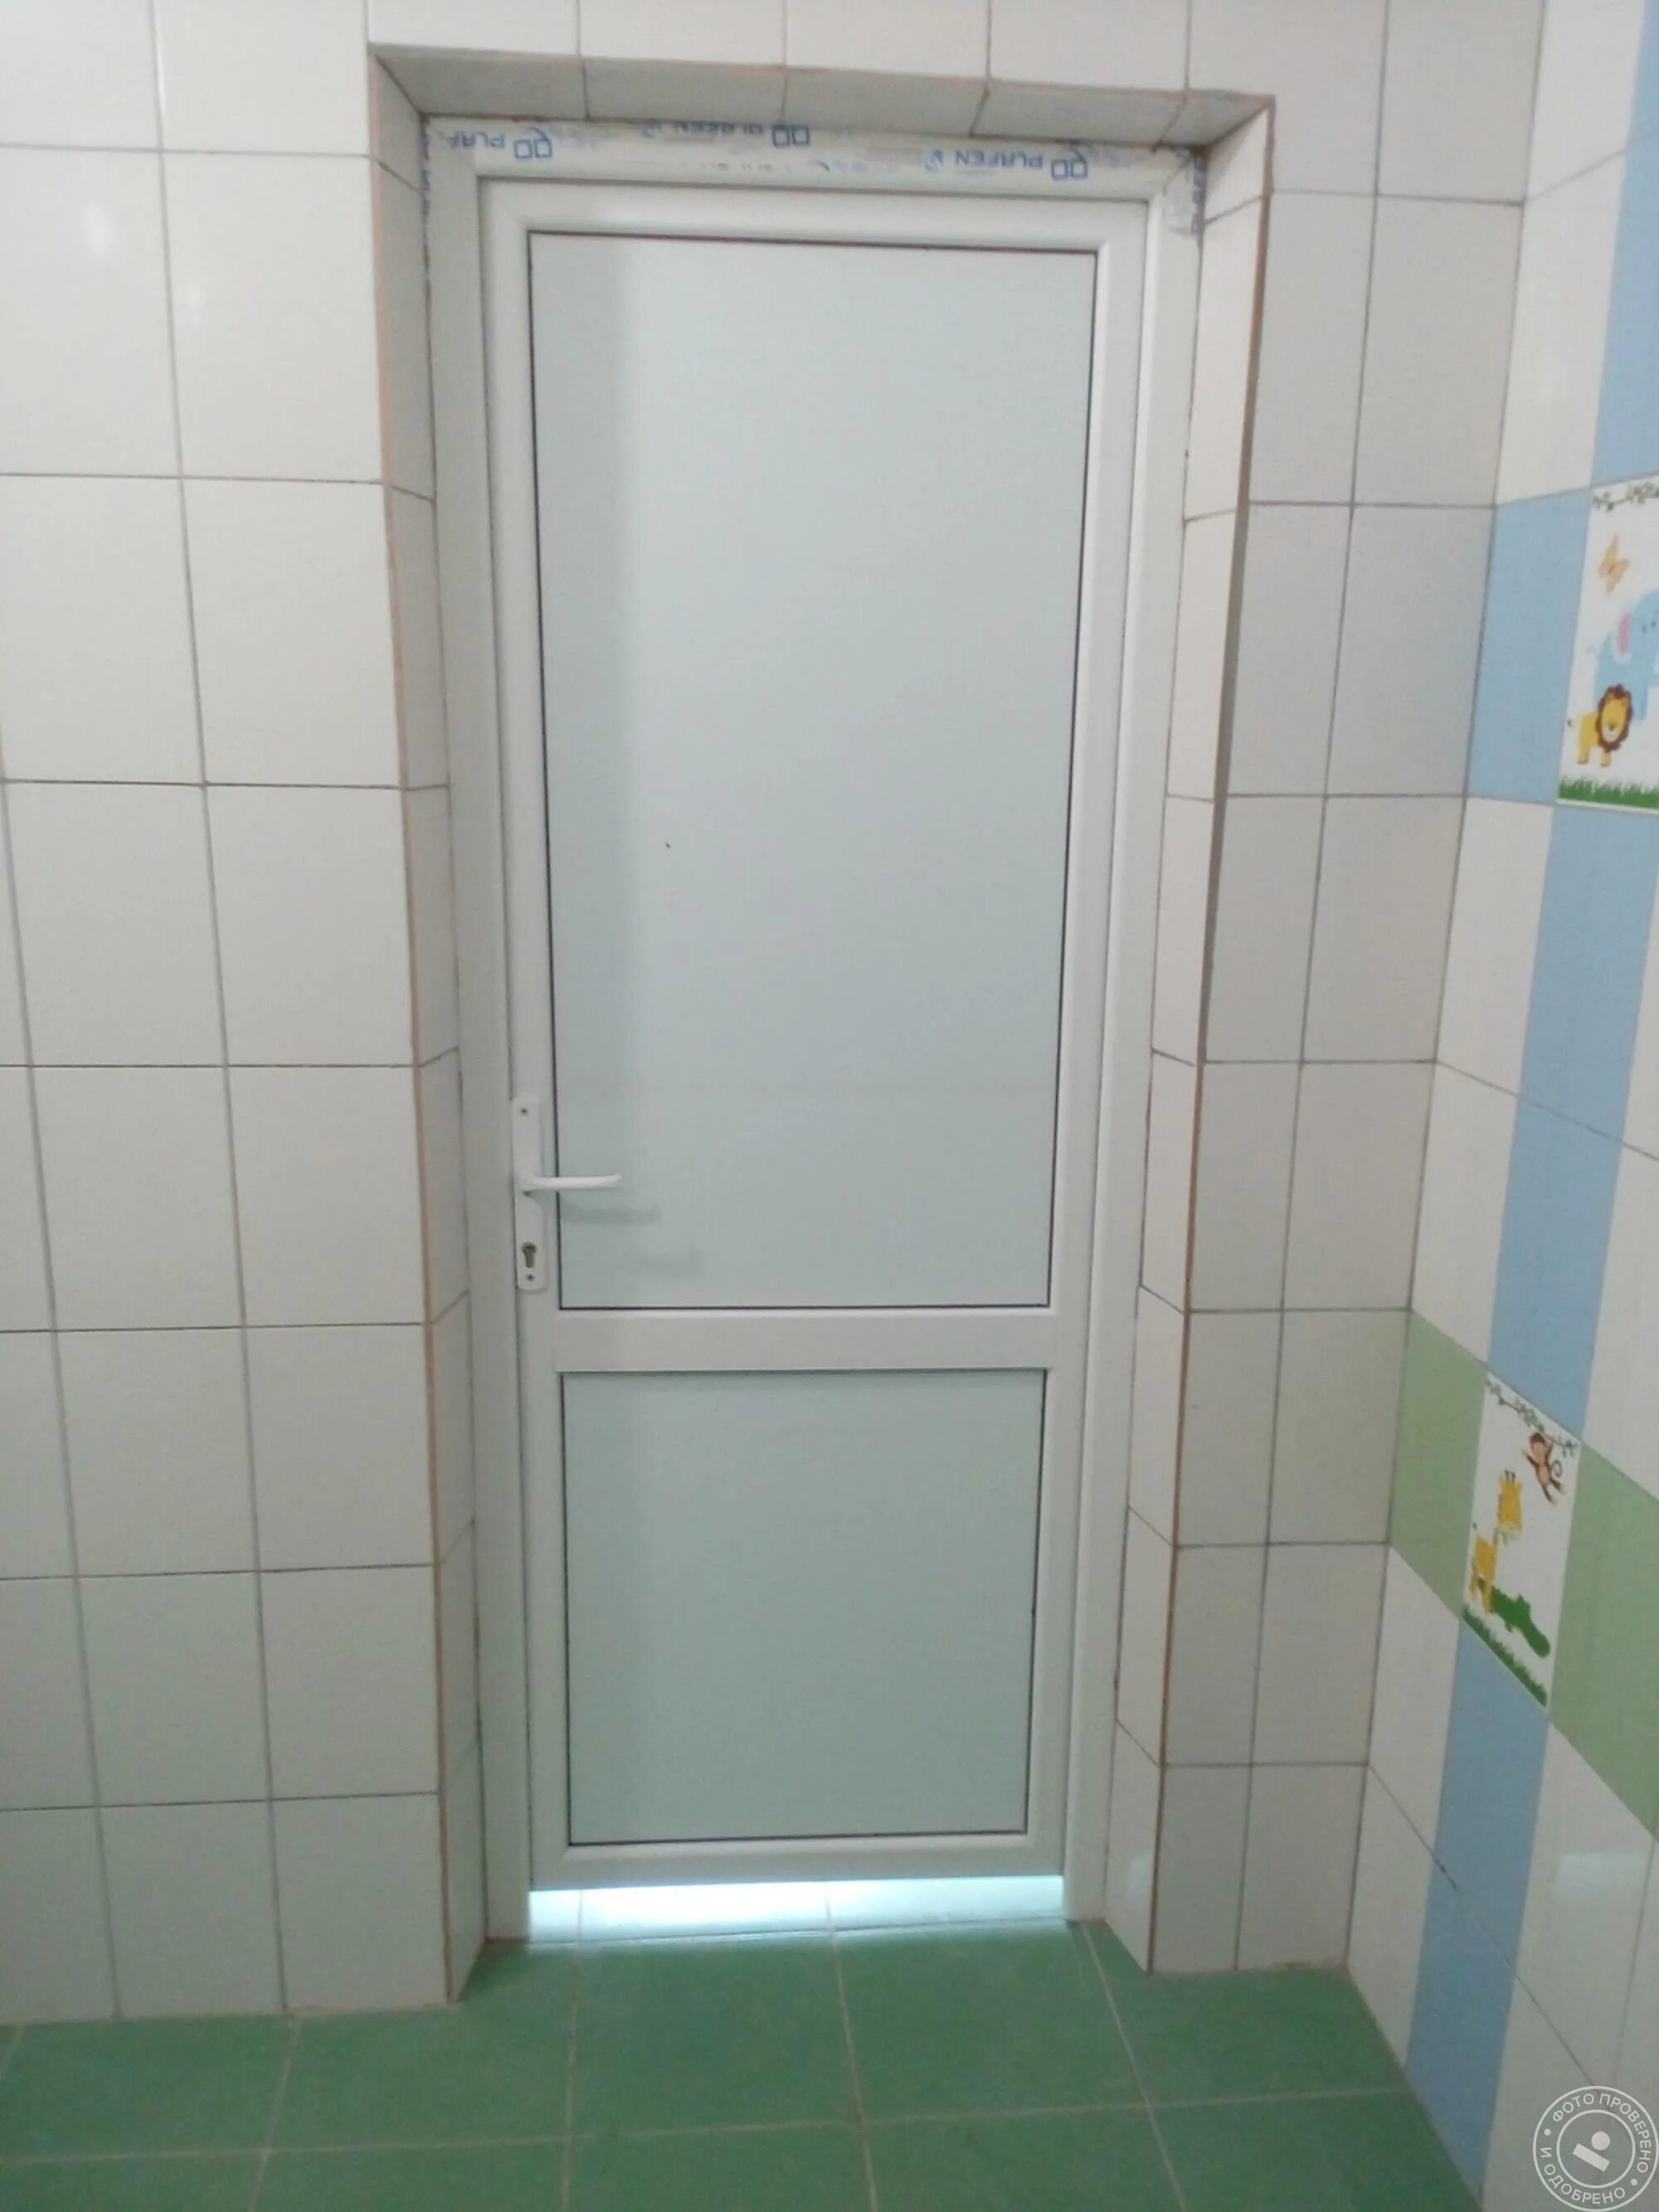 Пластиковая дверь в санузел. Пластиковая дверь в туалет. Пластиковая дверь в ванную комнату. Пластиковые двери в ванную и туалет. Пластиковые двери для ванны